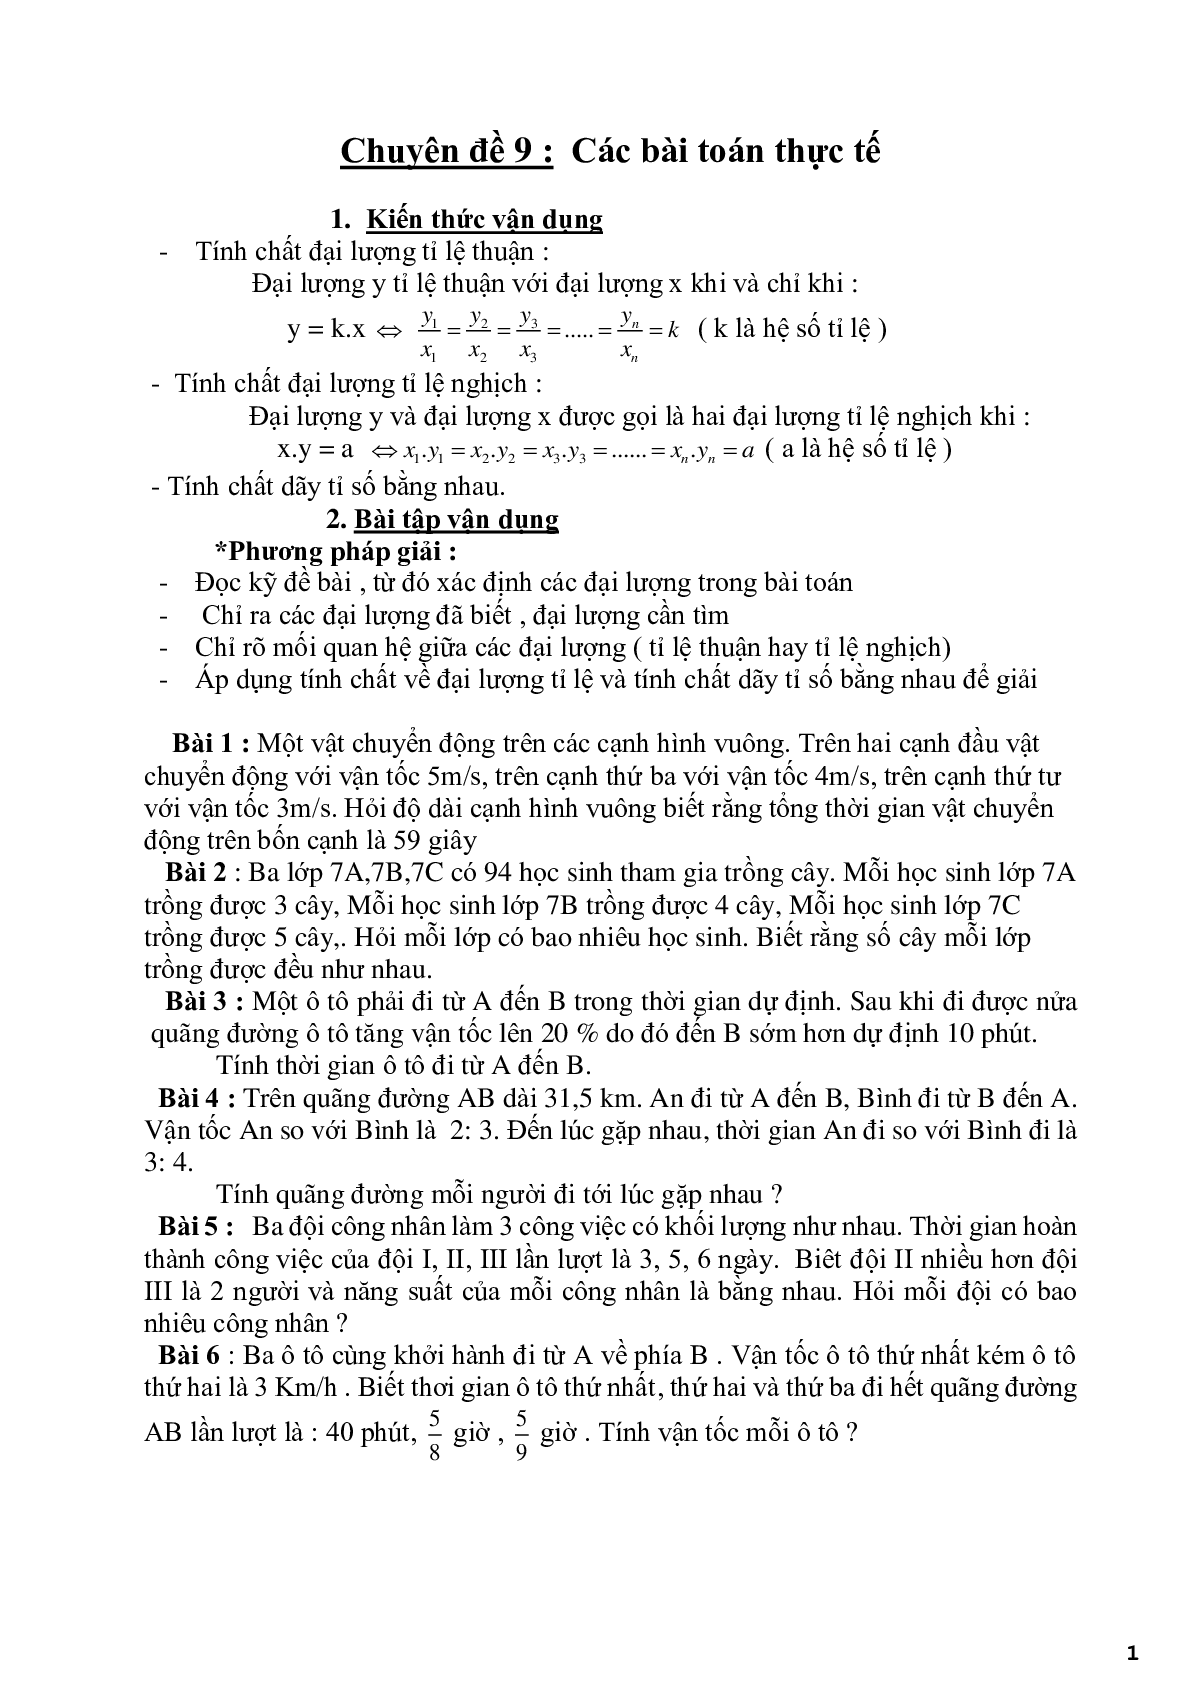 Chuyên đề 9 - Các bài toán thực tế (trang 1)